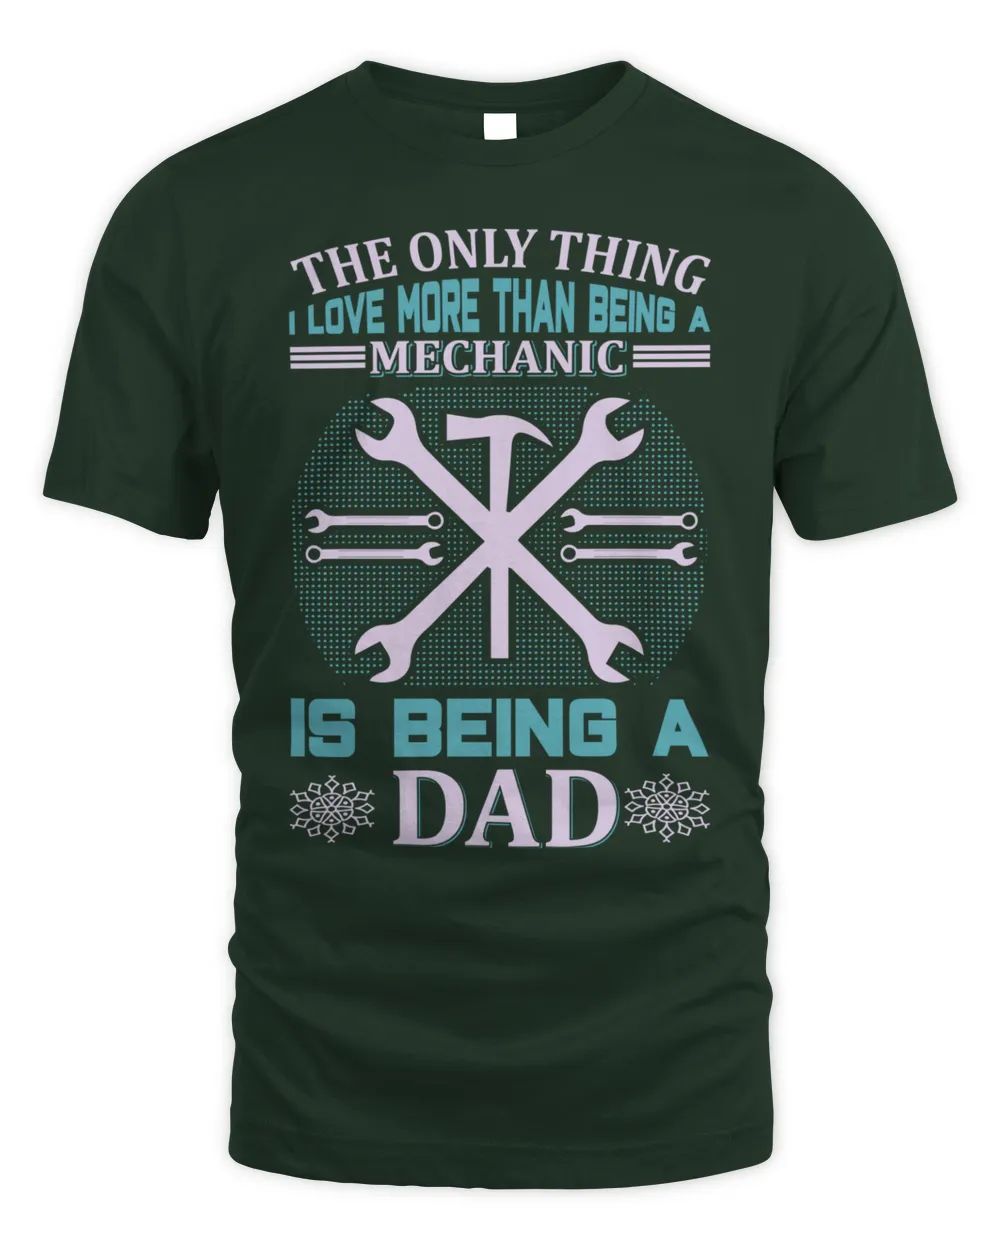 Father's Day Gifts, Father's Day Shirts, Father's Day Gift Ideas, Father's Day Gifts 2022, Gifts for Dad (74)